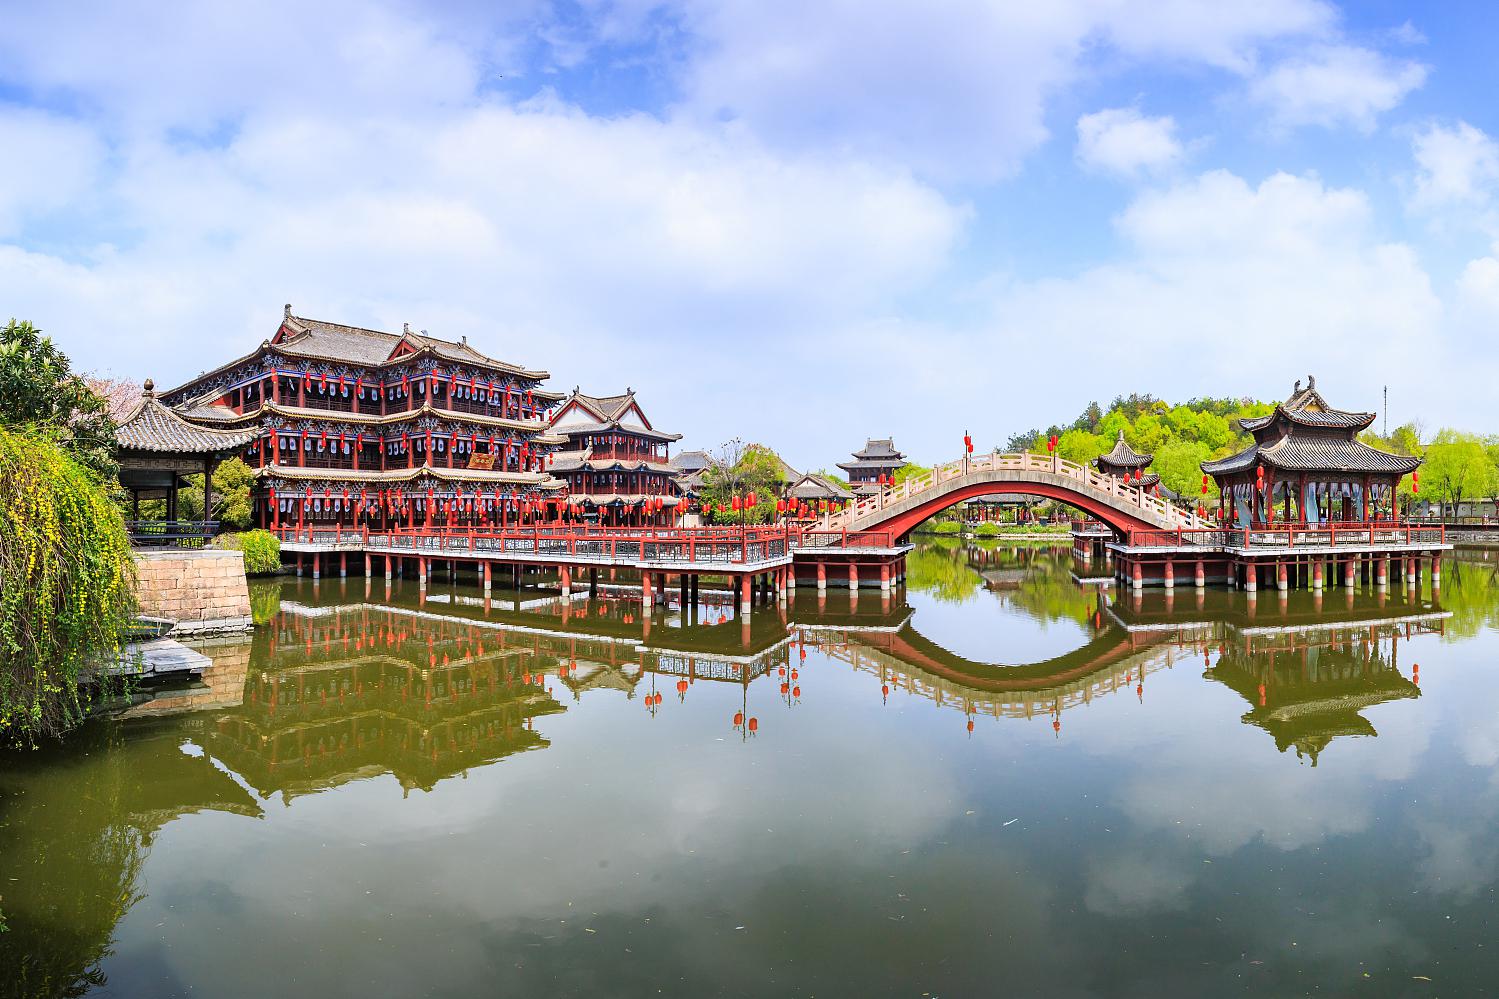 宋城杭州:中国悠久历史的呈现 作为中国历史文化名城,杭州承载了数